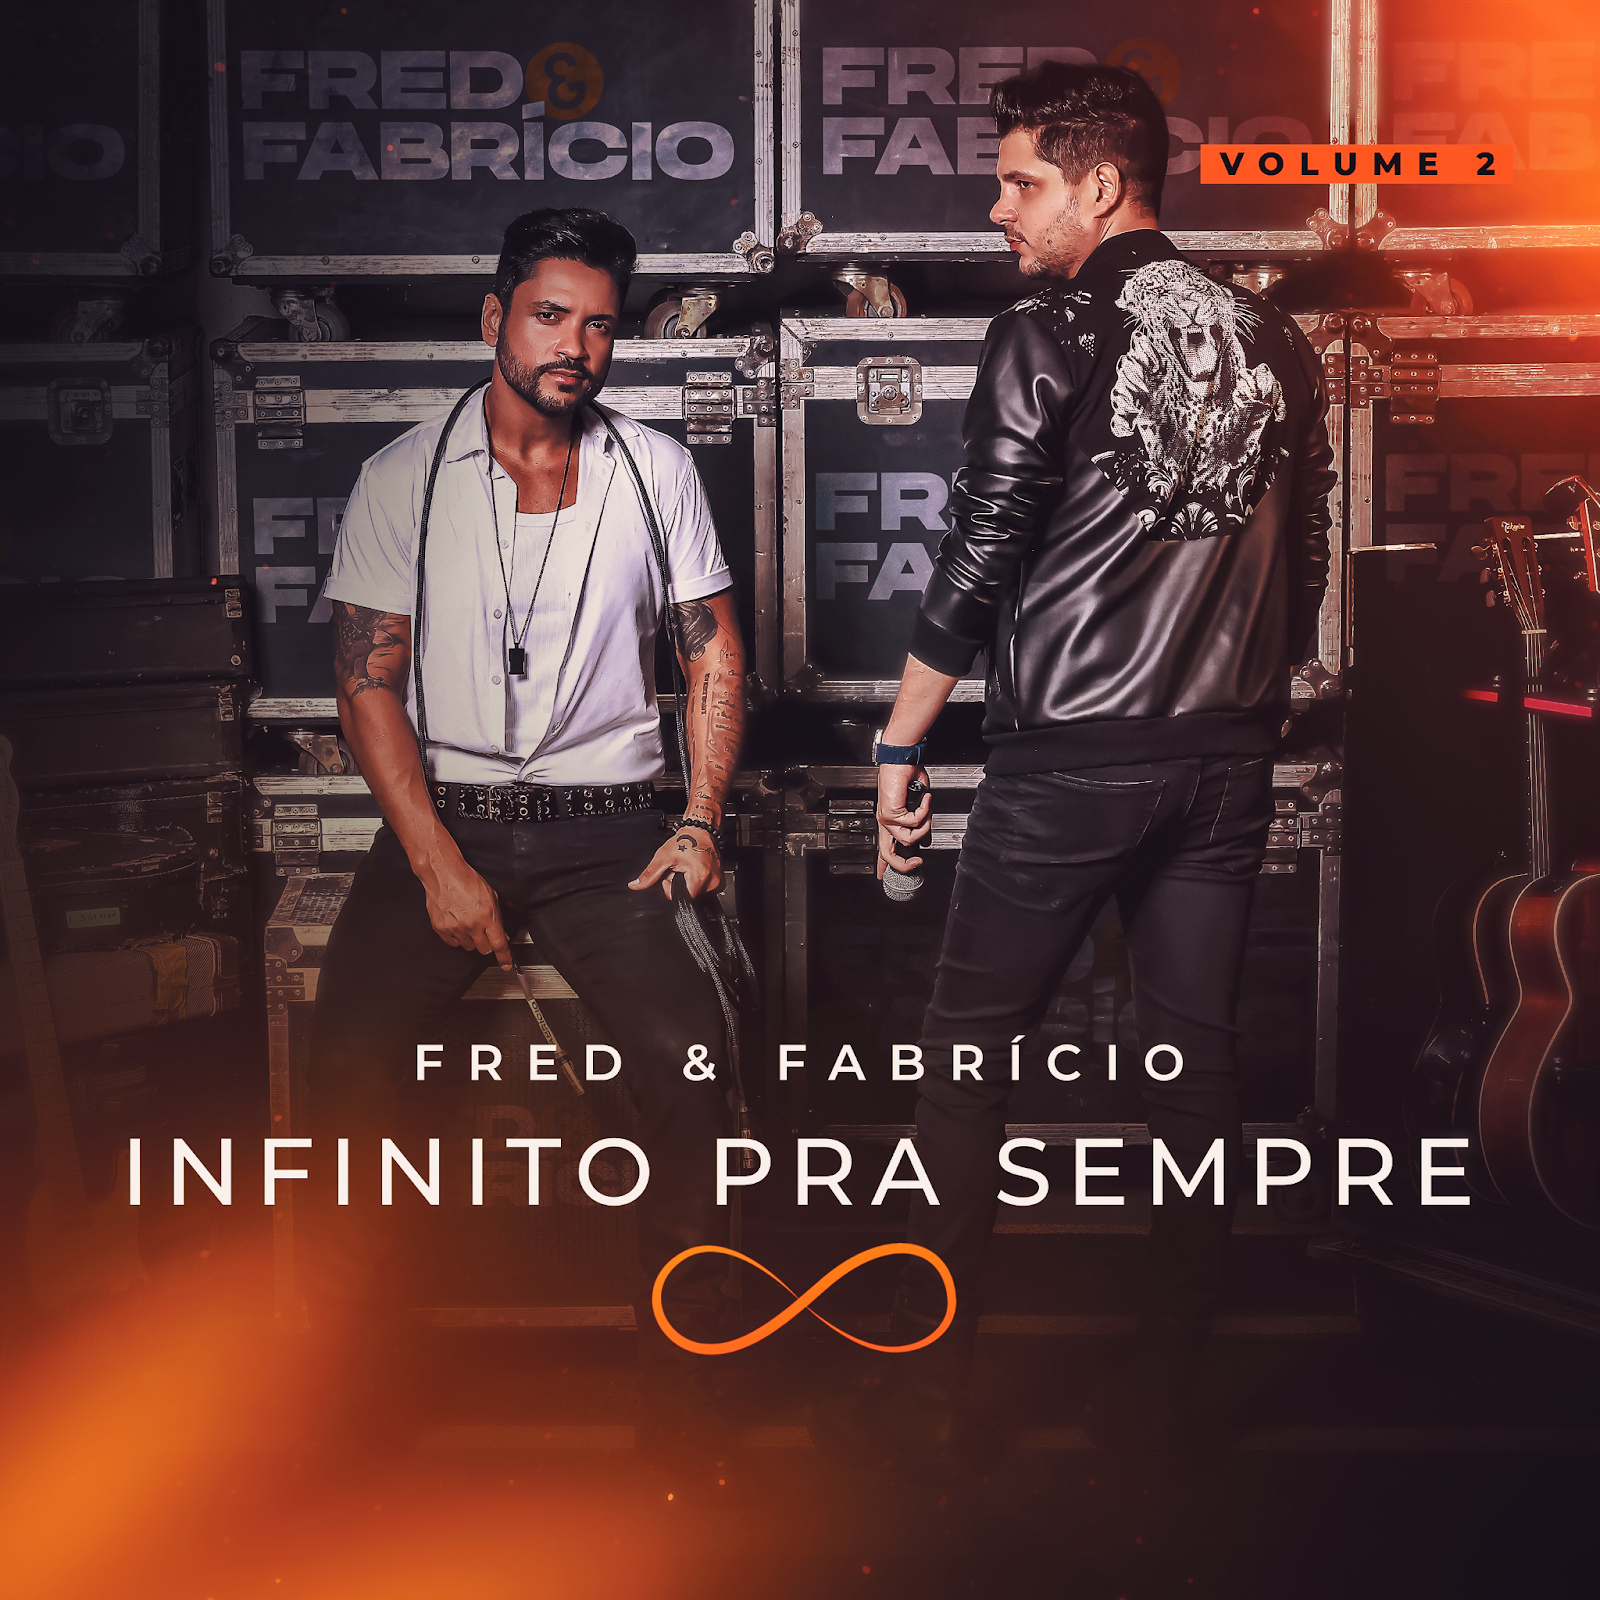 Fred e Fabricio Lancam a Segunda Parte do Projeto 22Infinito Para Sempre22 com o Album 22Suburbio vol. 2 POP CYBER